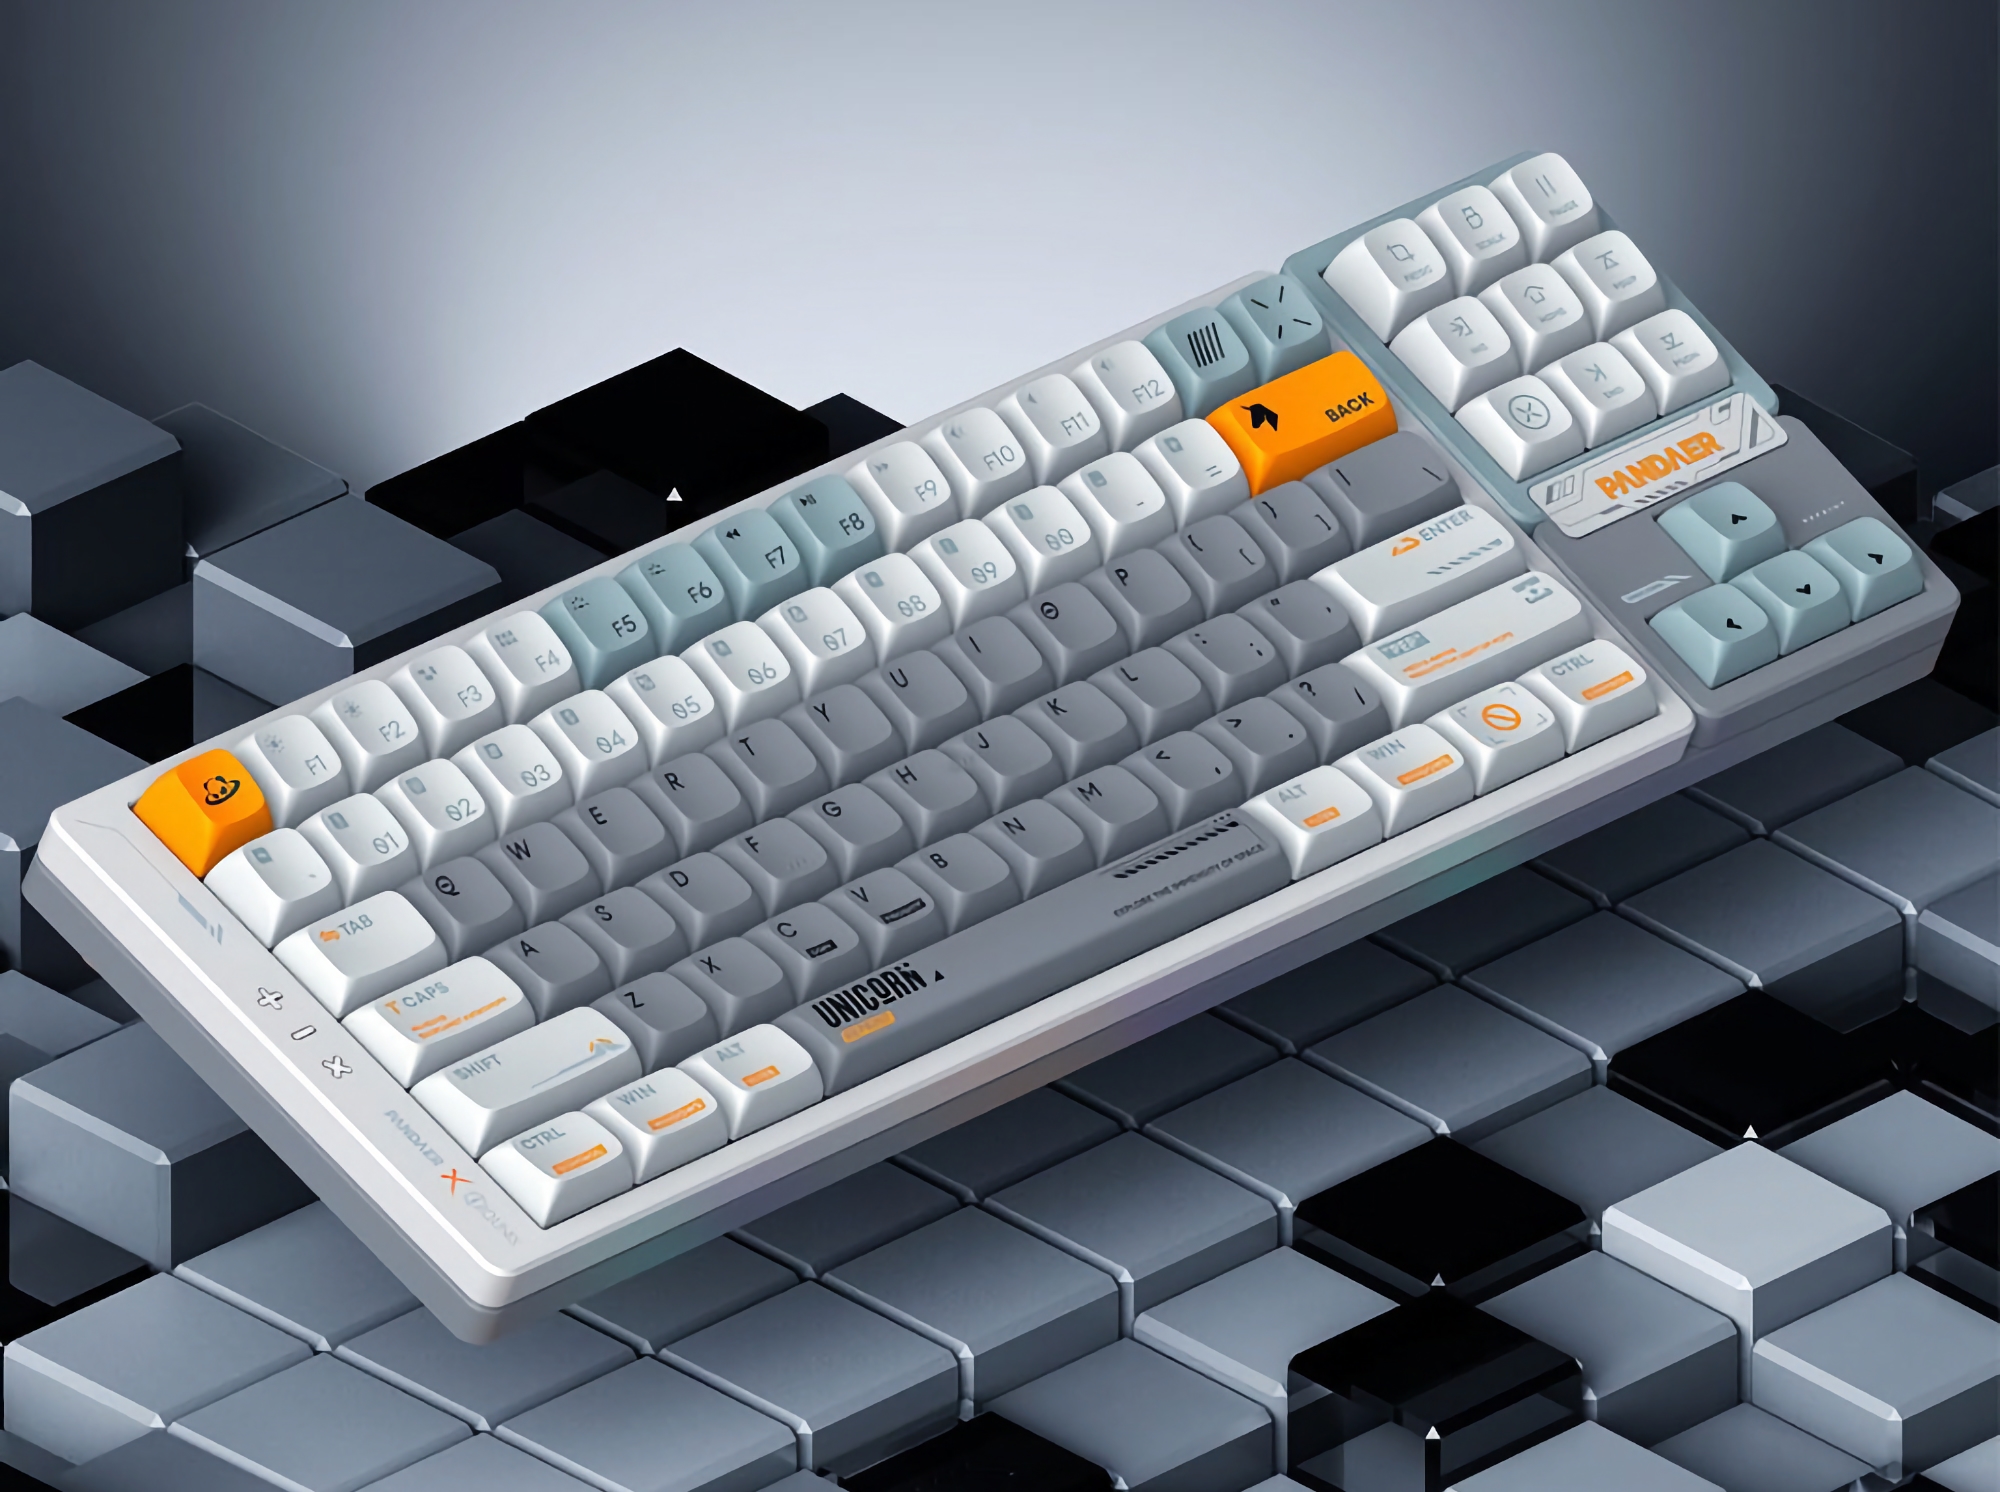 Meizu har afsløret et nyt mekanisk tastatur under mærket PANDAER med RGB-baggrundsbelysning, aftagelige taster og tre tilslutningsmuligheder.